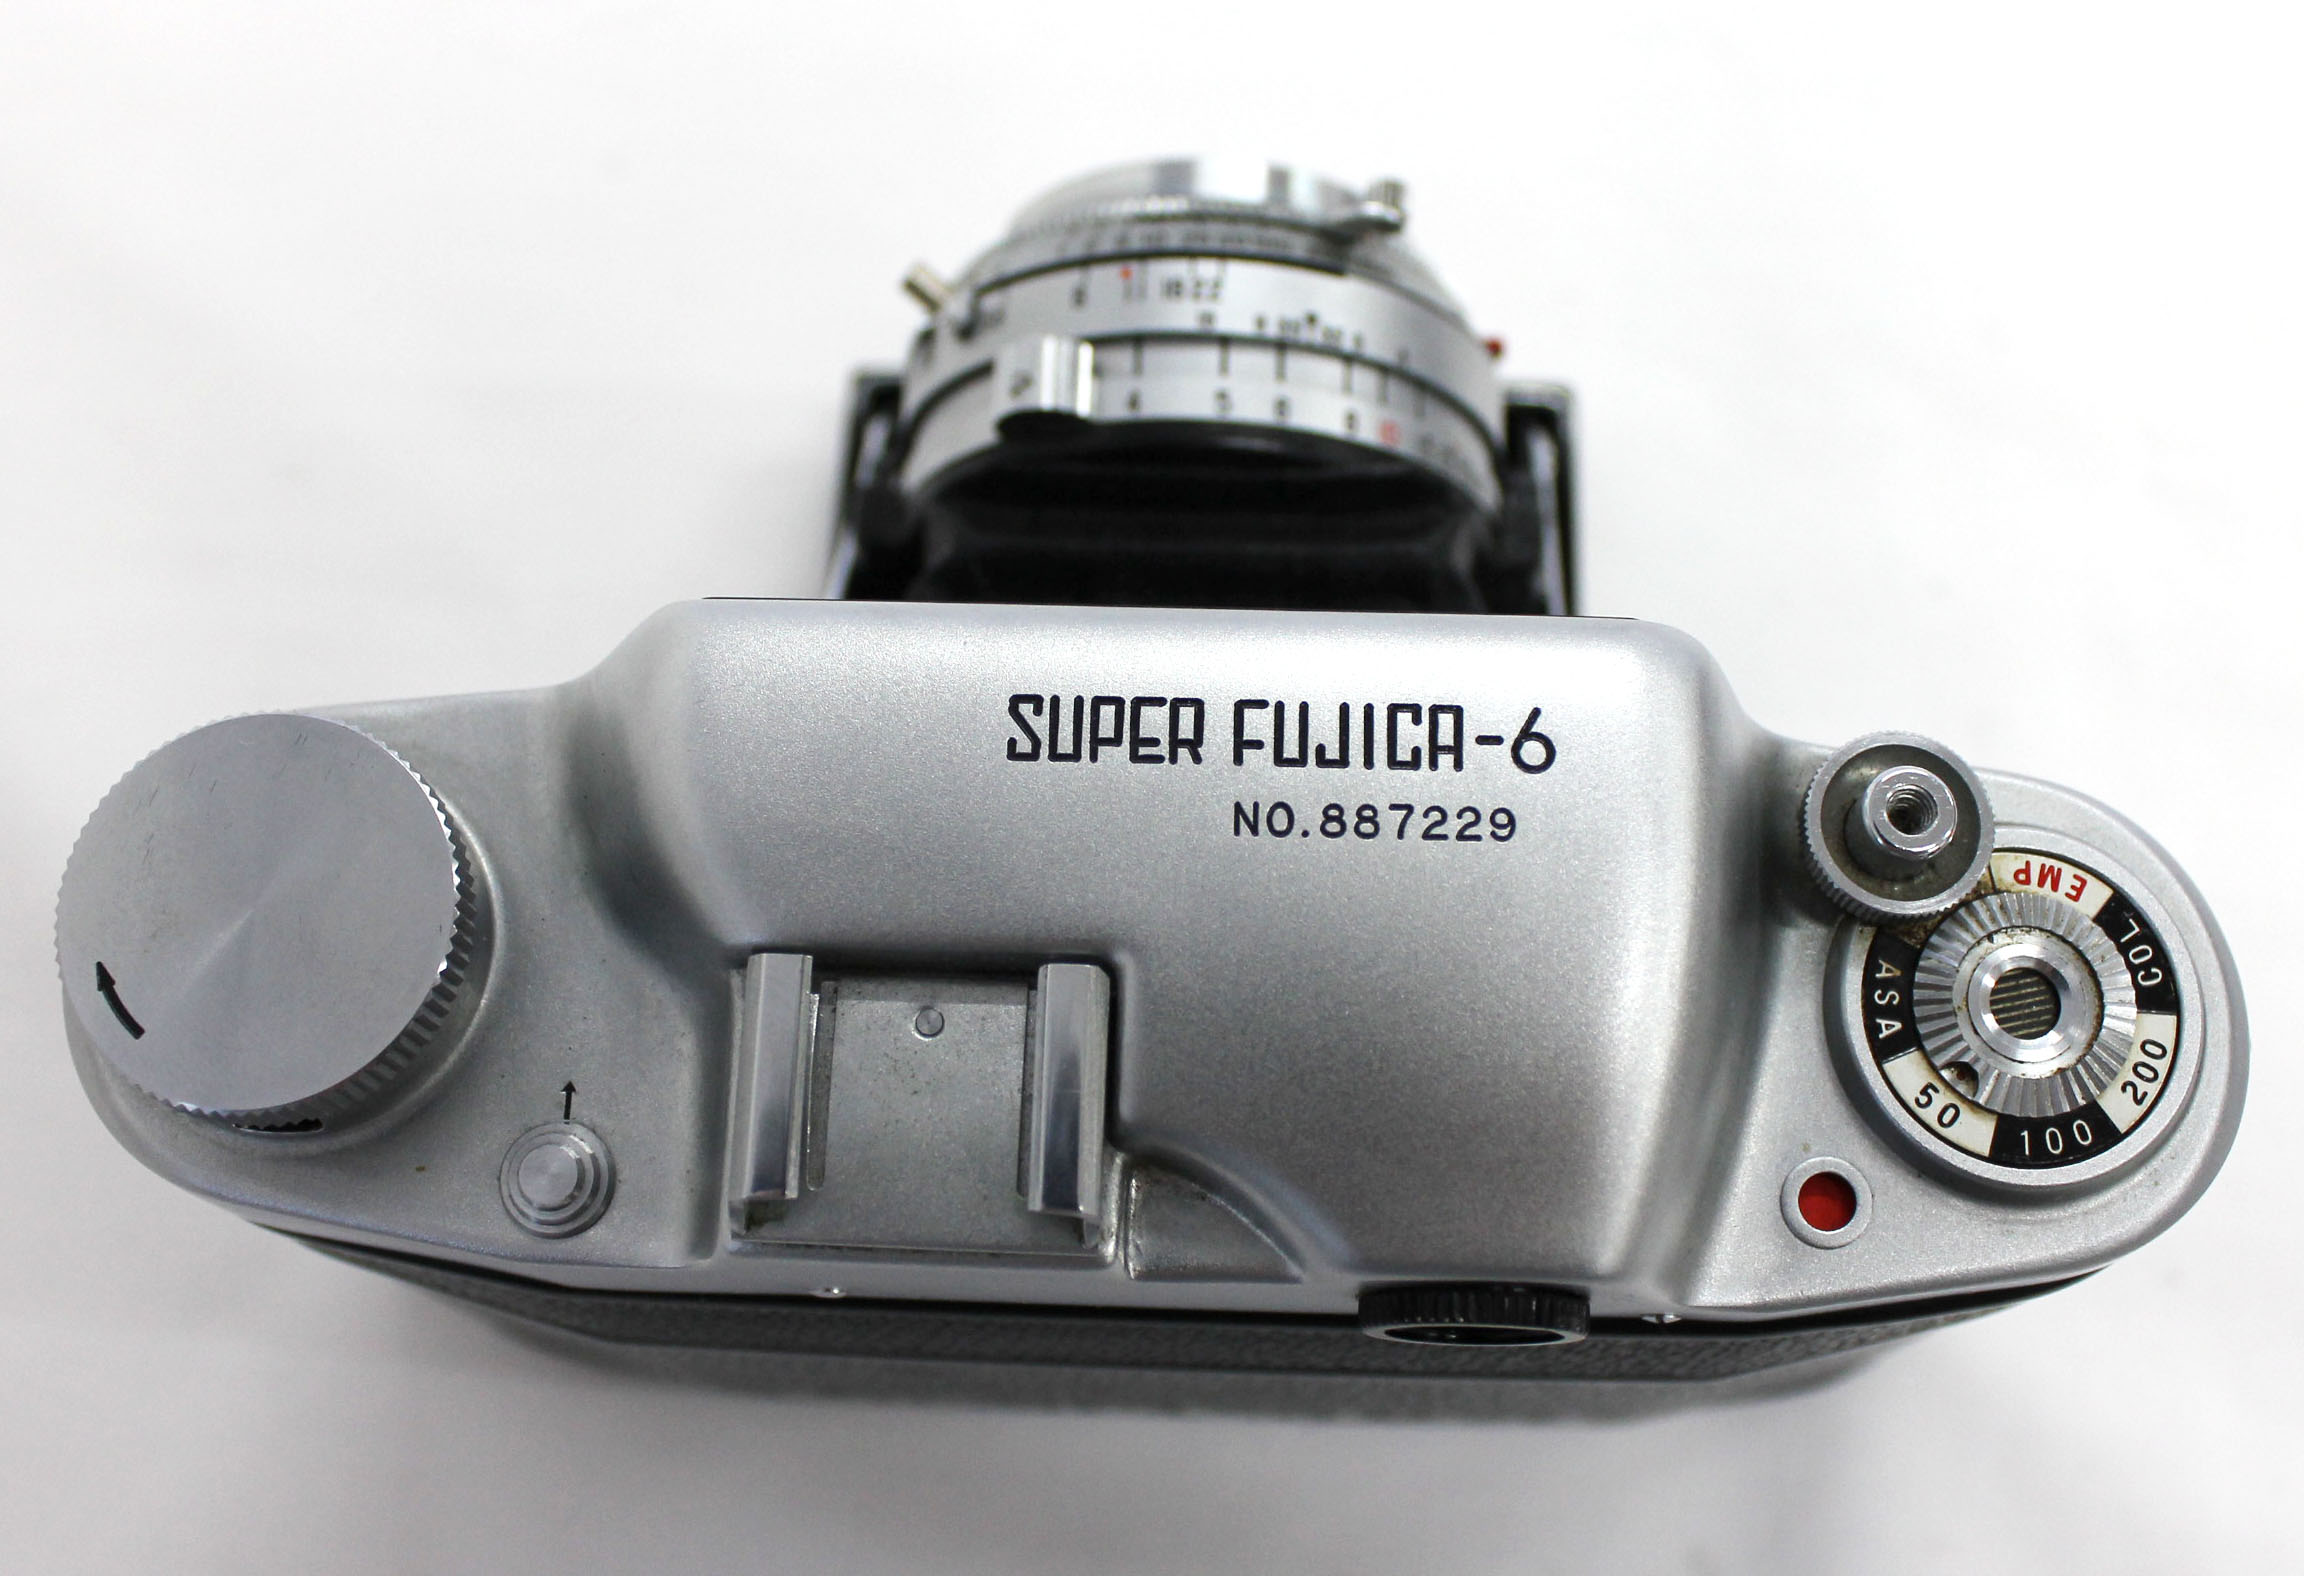  Fuji Super Fujica-6 Six 6x6 Medium Format Film Camera with Fujinar 75mm F/3.5 from Japan Photo 5